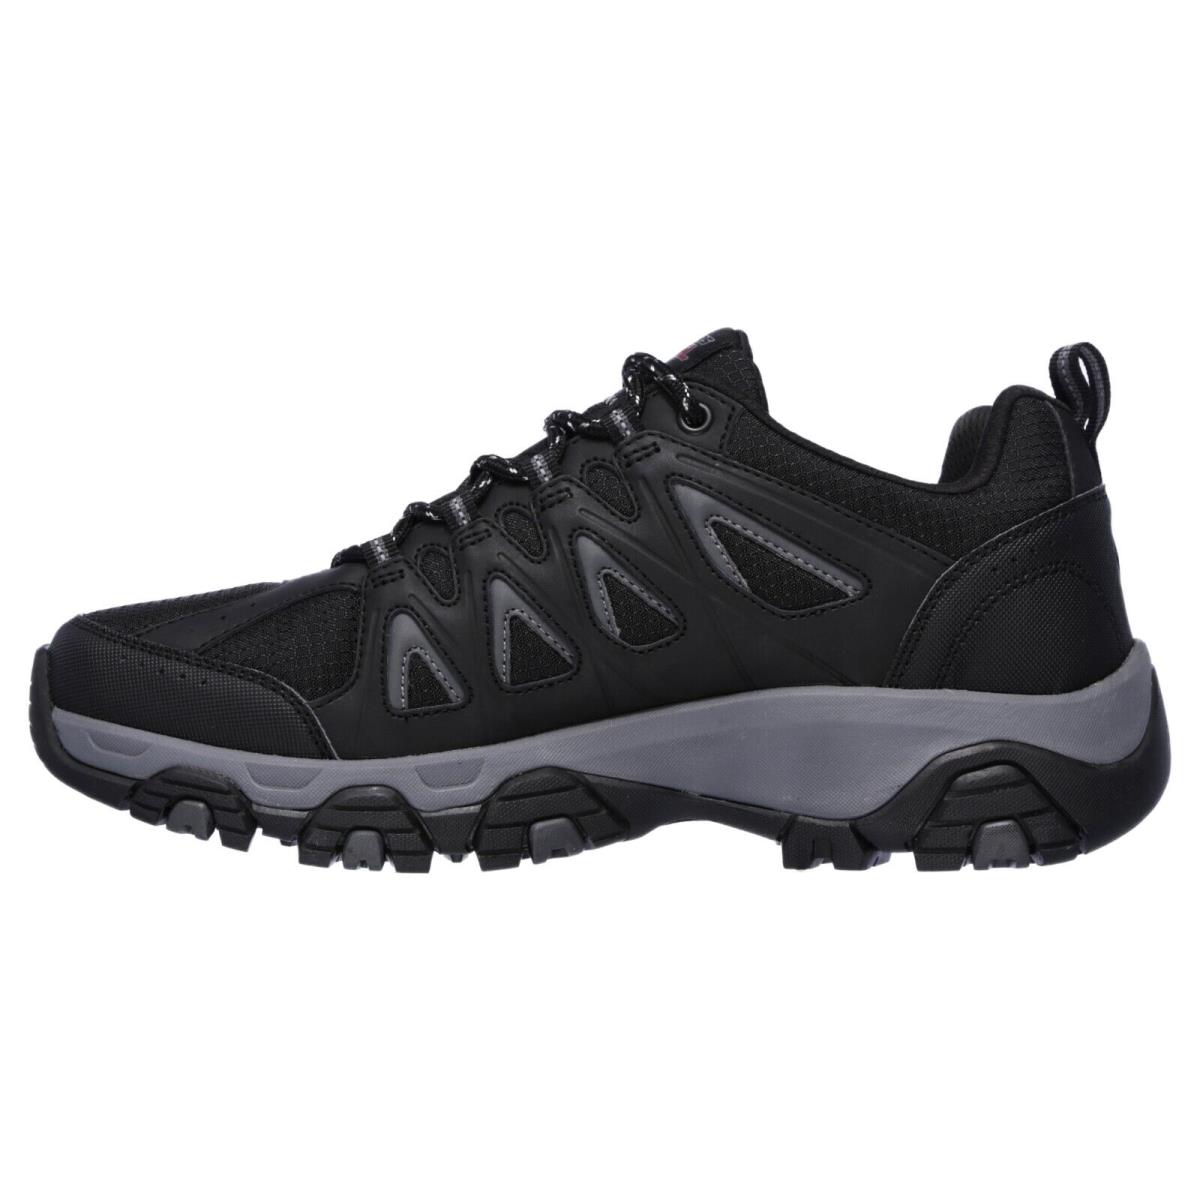 Mens Skechers Terrabite Comfort Trail Runner Black Gray Leather Shoes